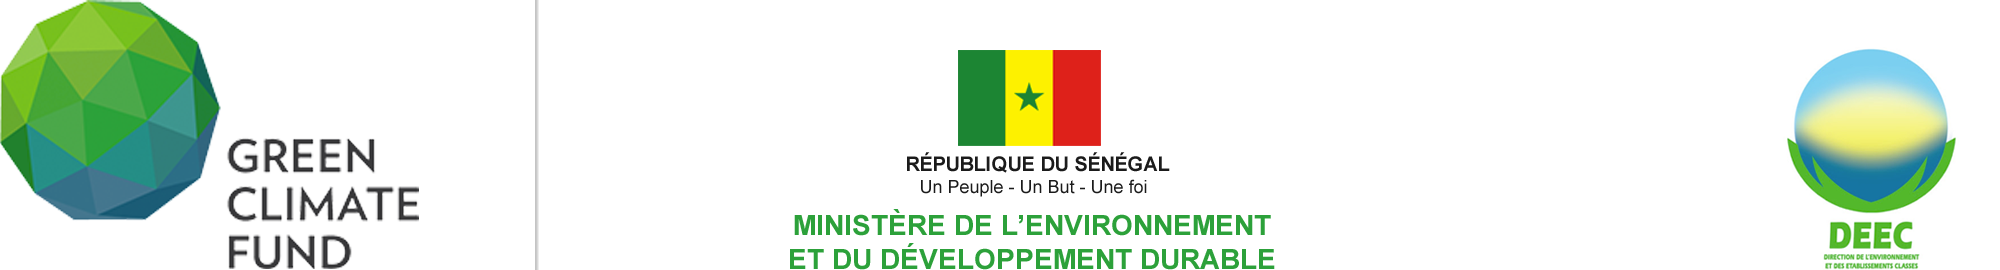 Fonds Vert pour le Climat - Sénégal